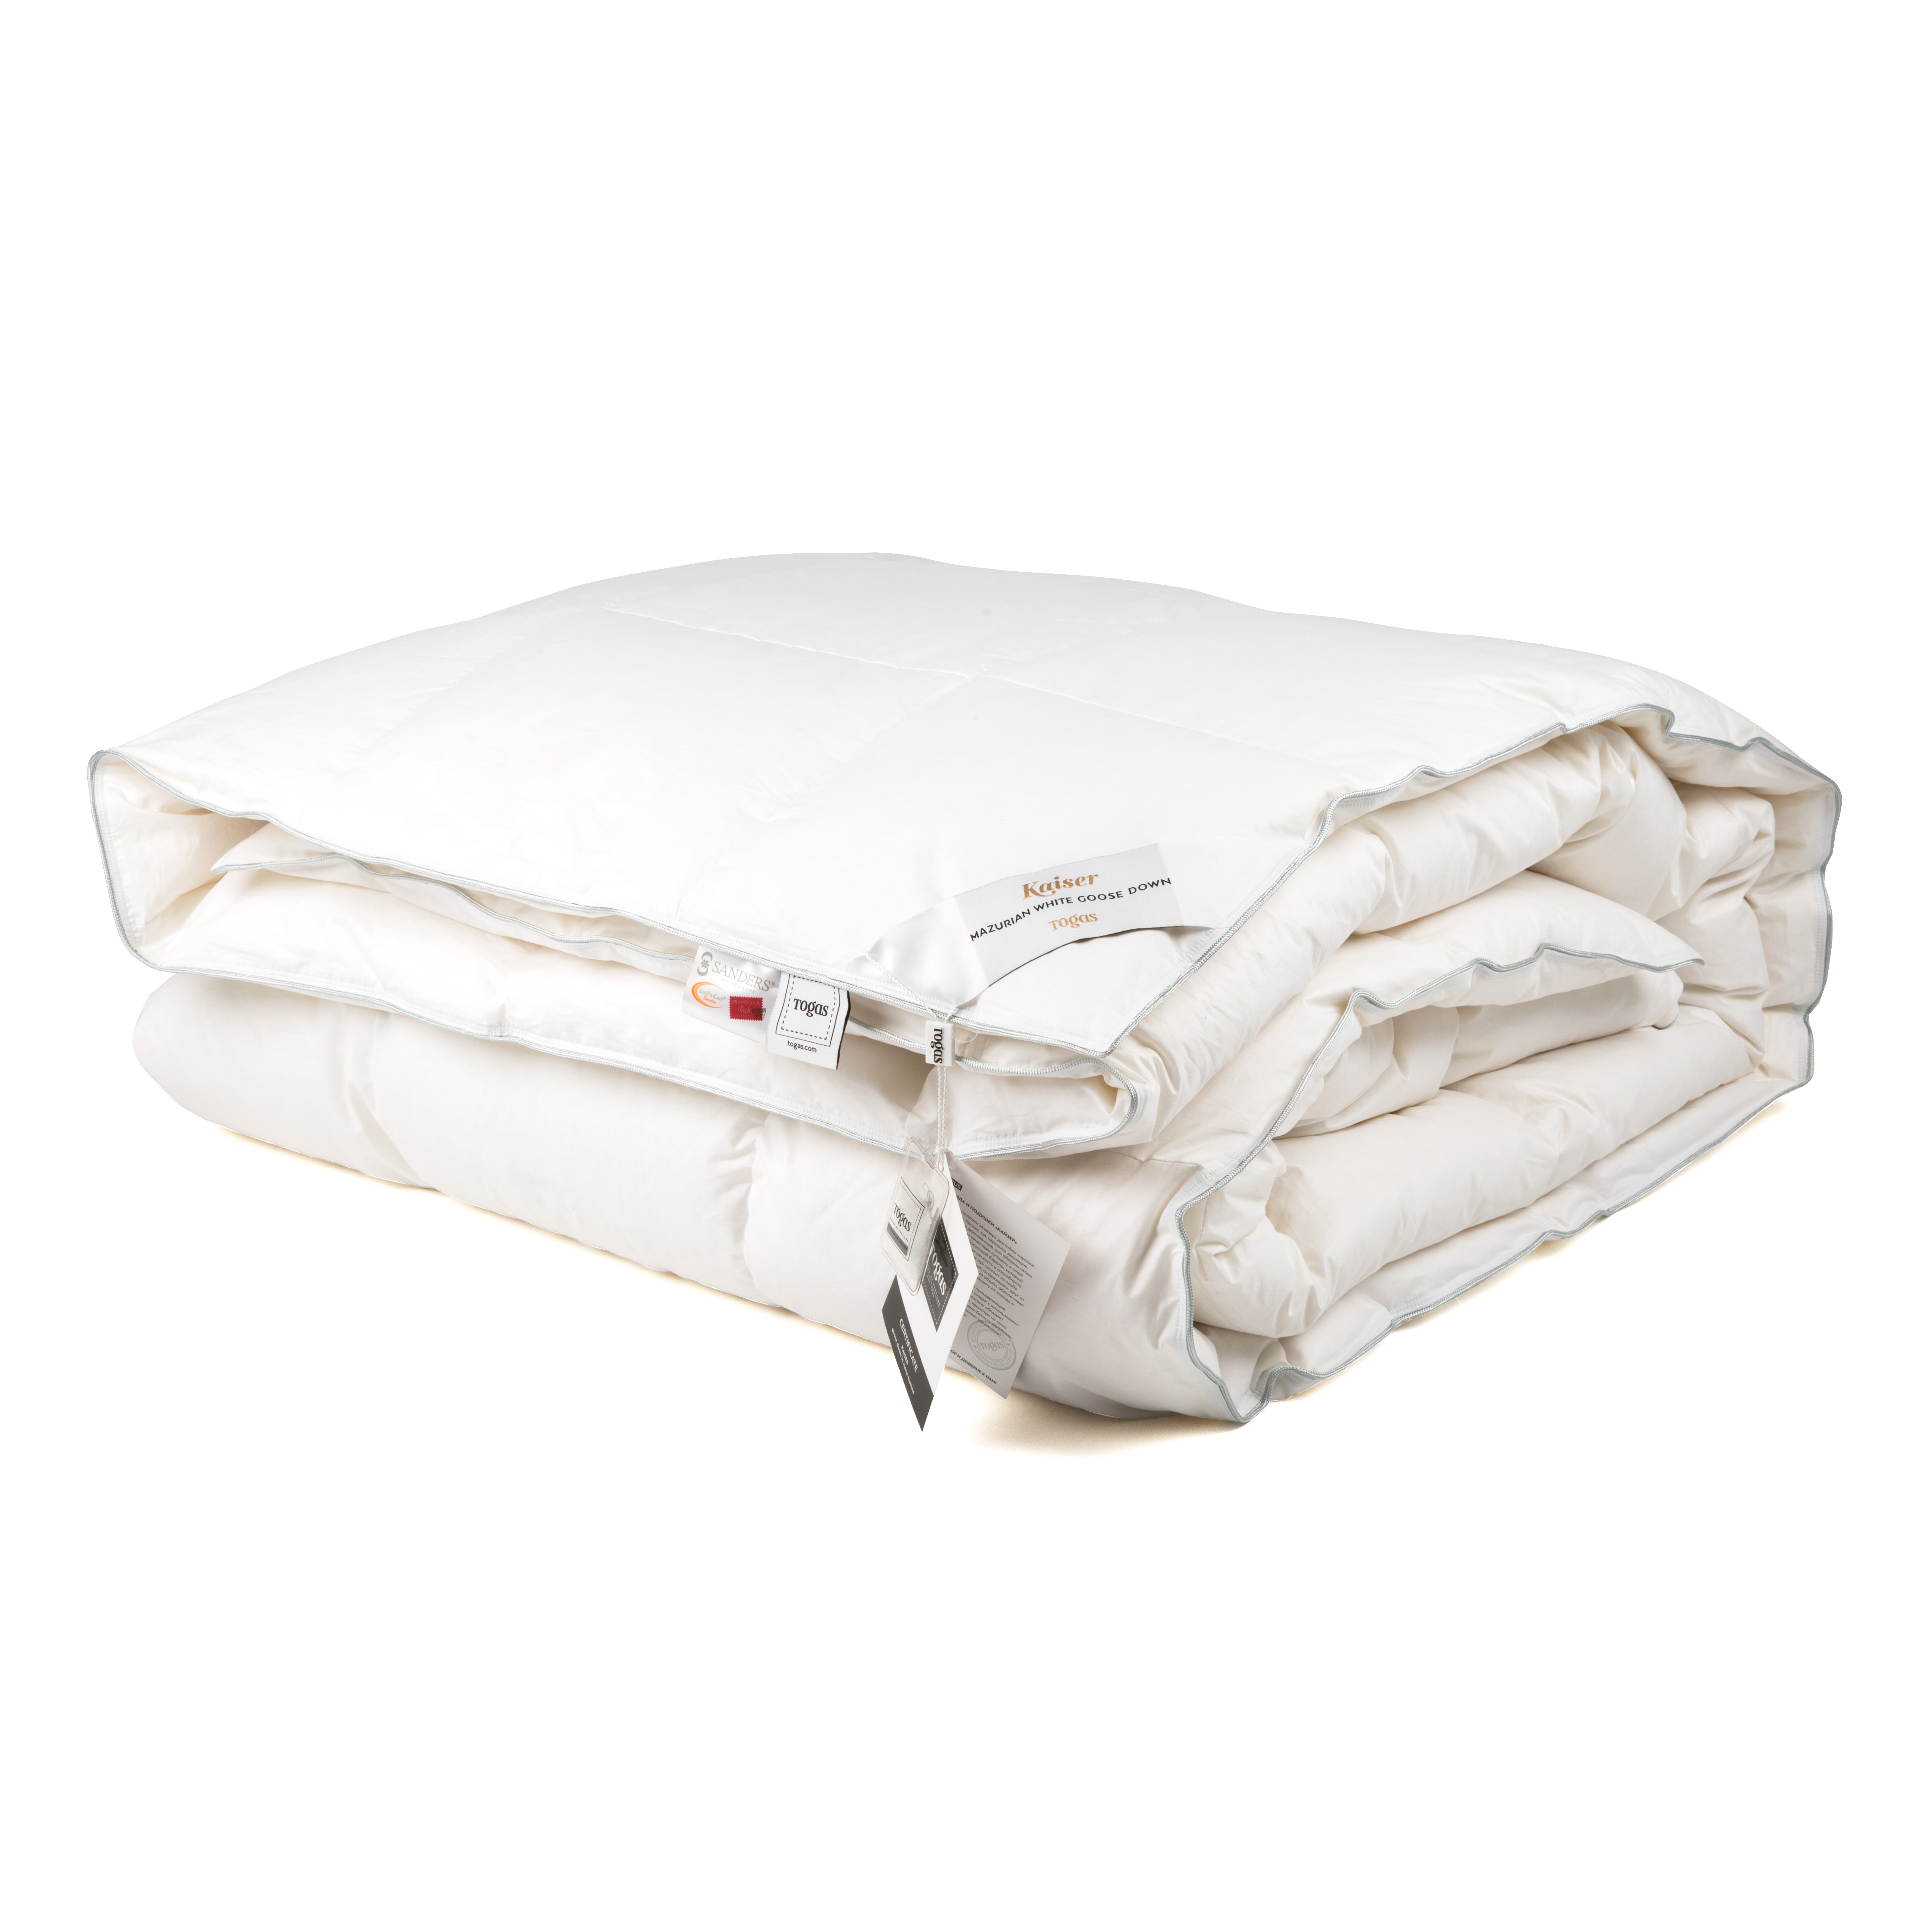 Одеяло Кайзер (140х200 см), размер 140х200 см, цвет белый tgs247002 Одеяло Кайзер (140х200 см) - фото 1